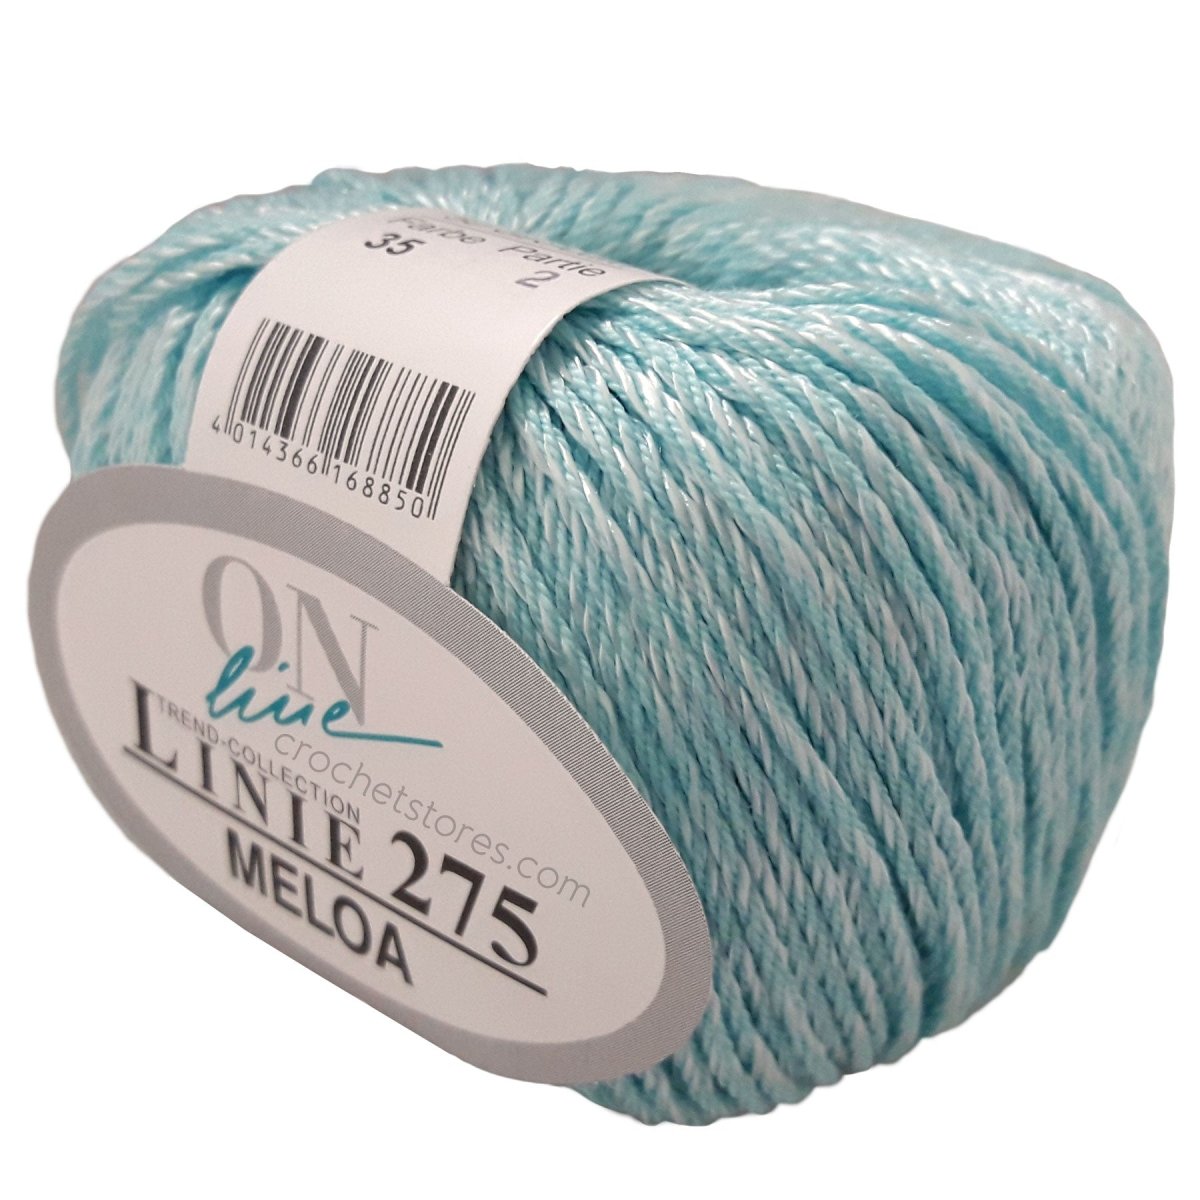 MELOA - Crochetstores110275-00354014366168850